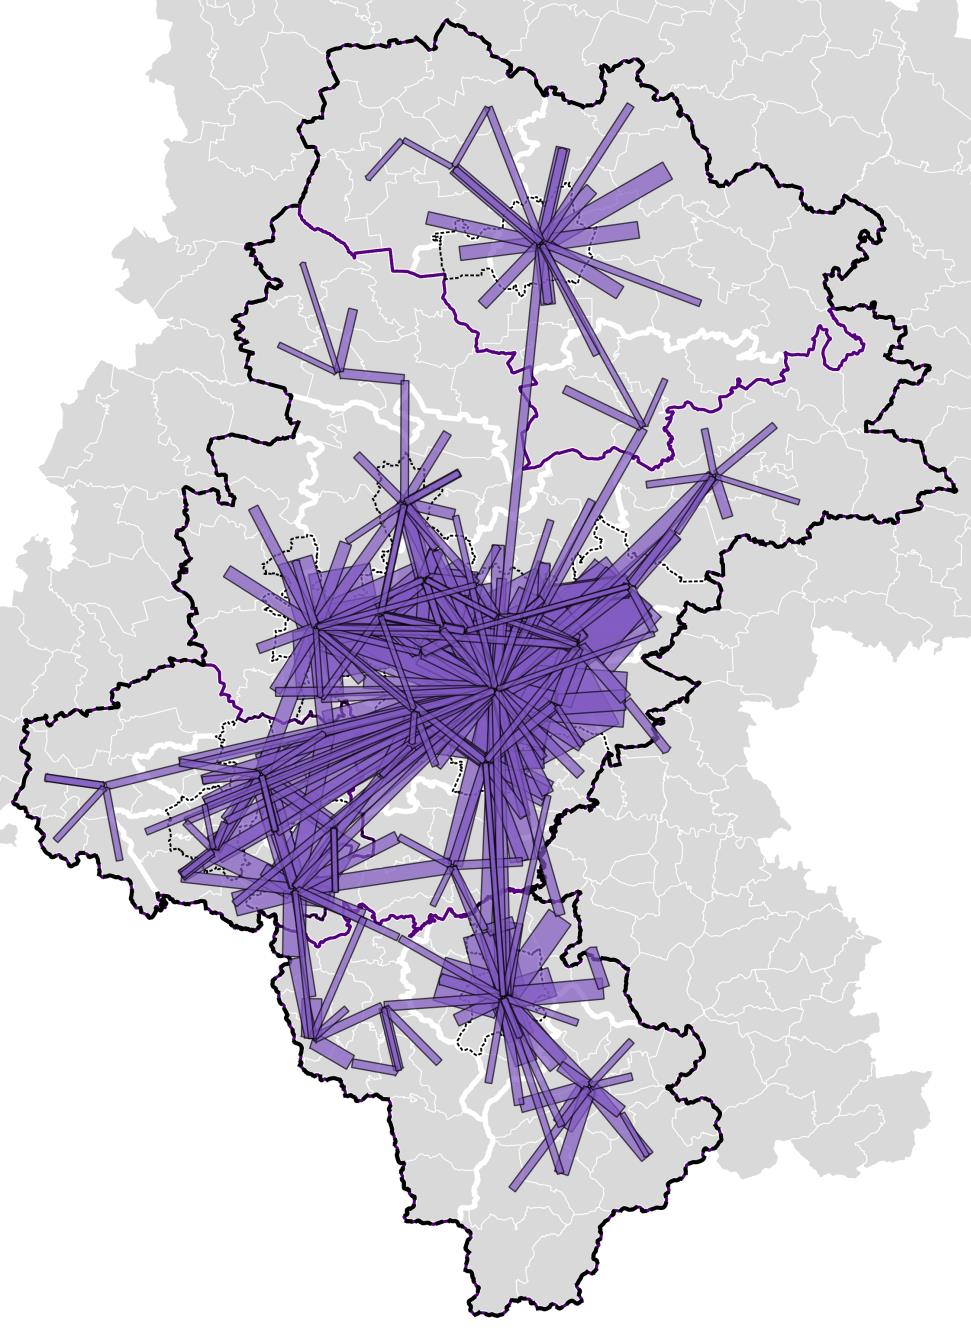 Na dworcach kolejowych w Katowicach i Gliwicach roczna odprawa podróżnych kształtuje się na poziomie powyżej 2 mln osób.